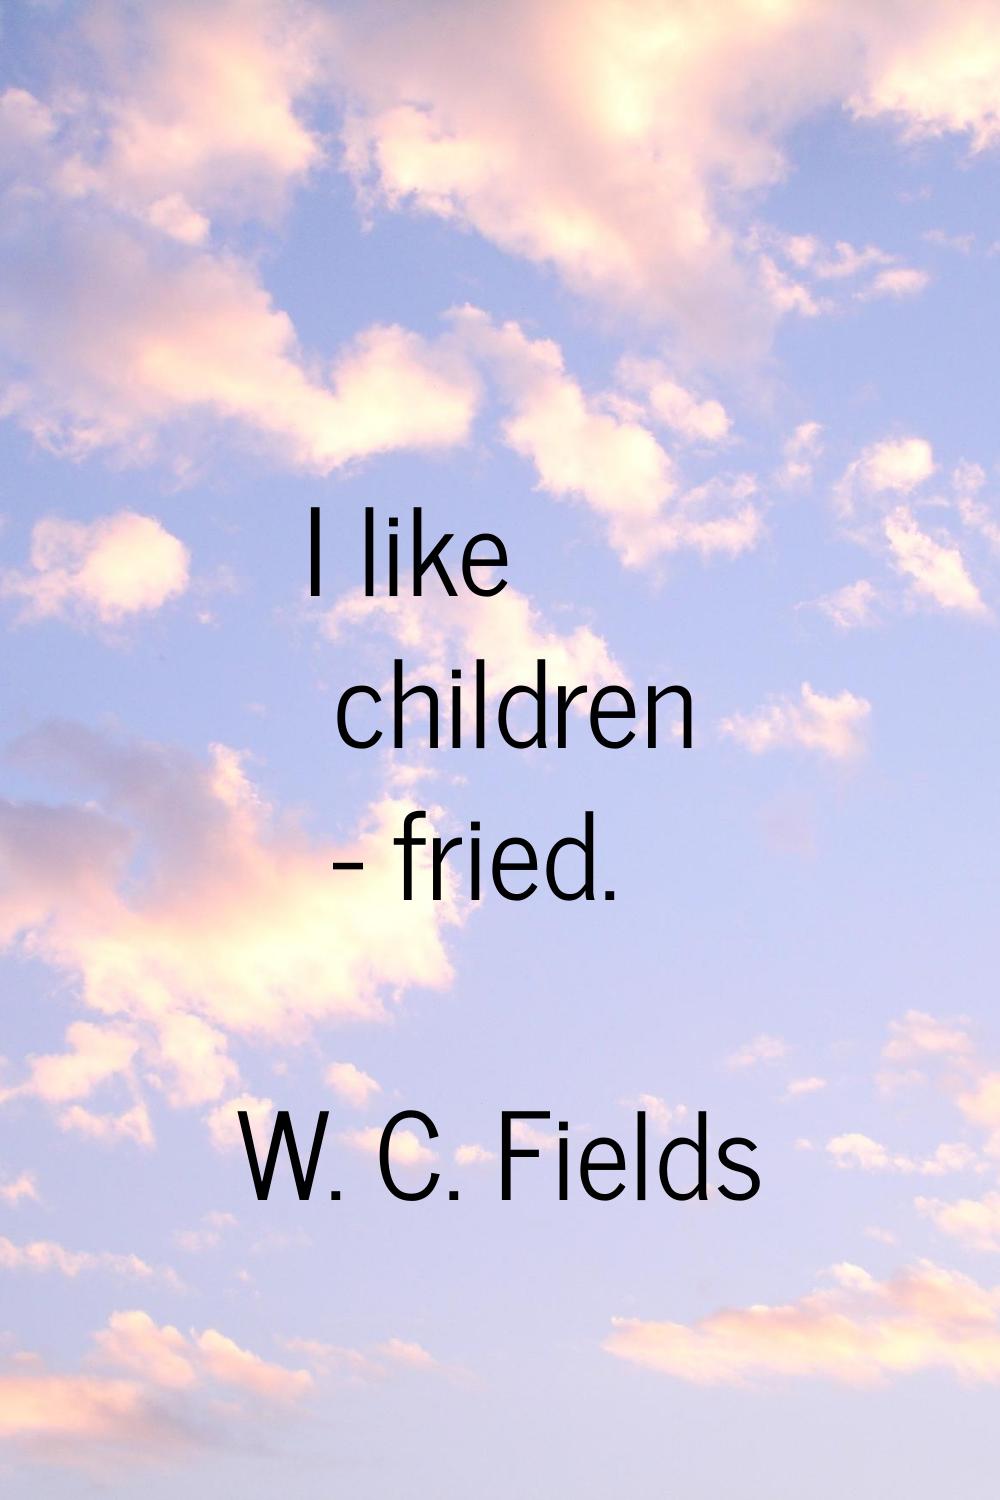 I like children - fried.